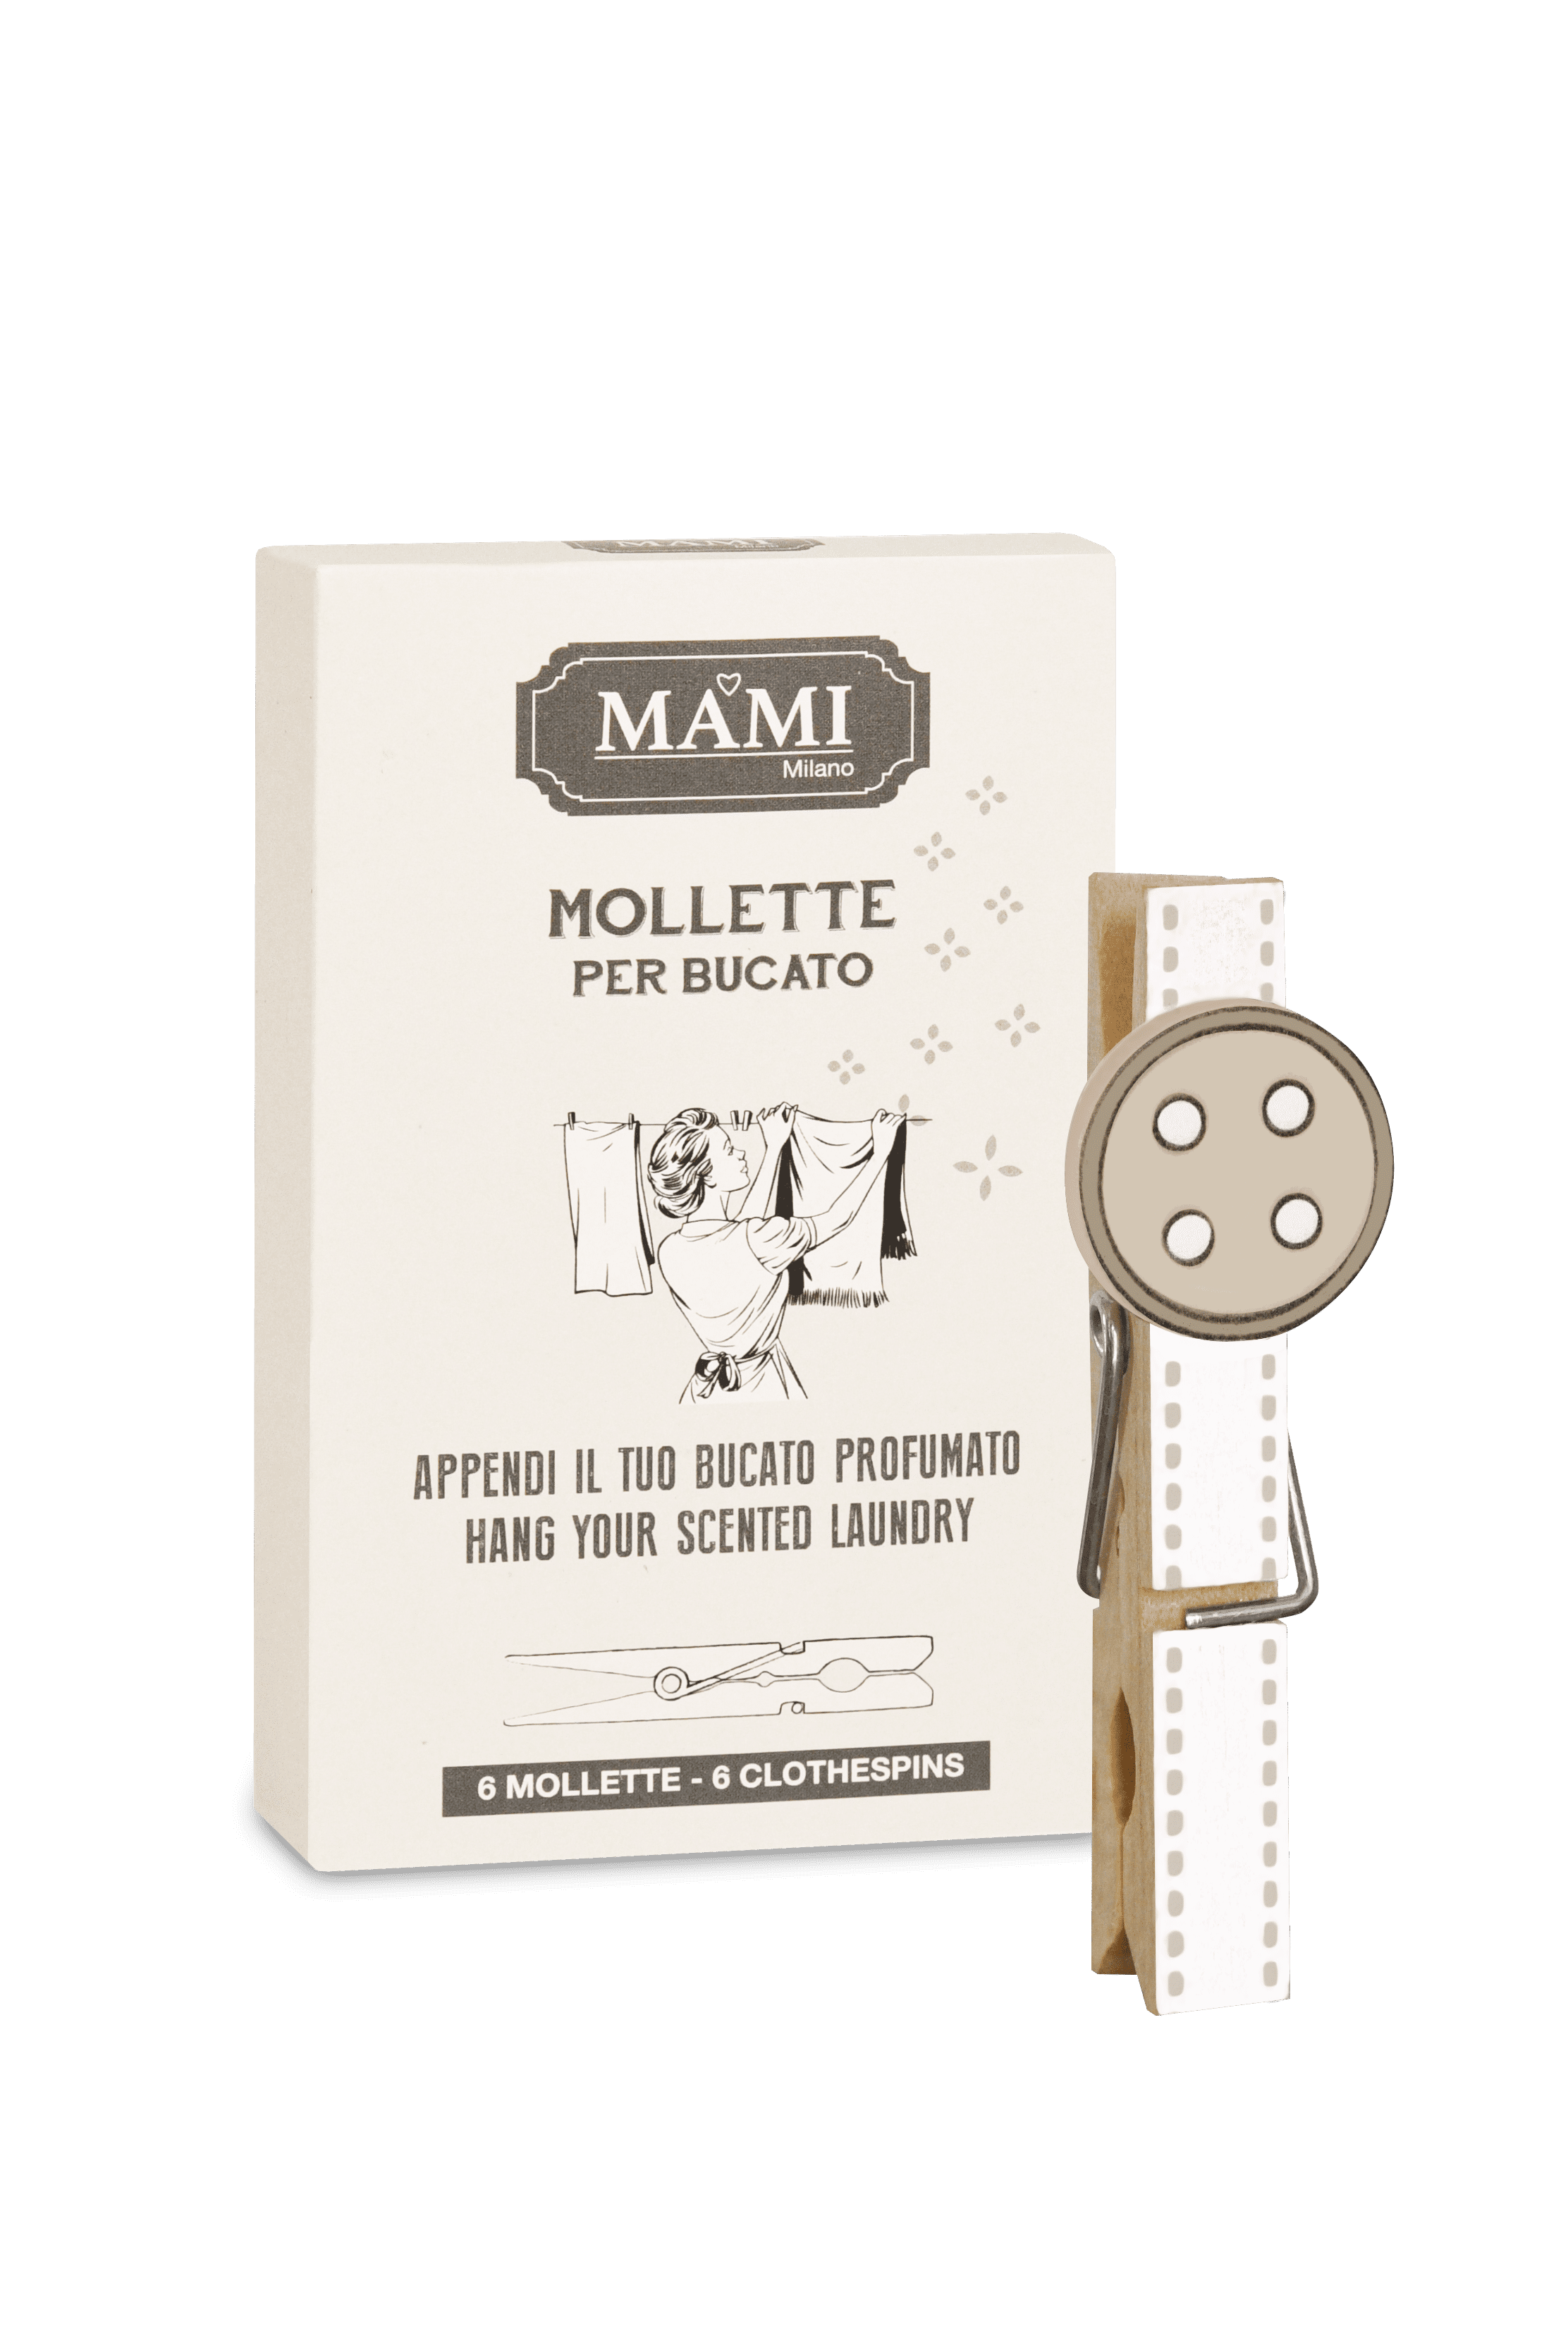 Le Mollette - MAMI Milano